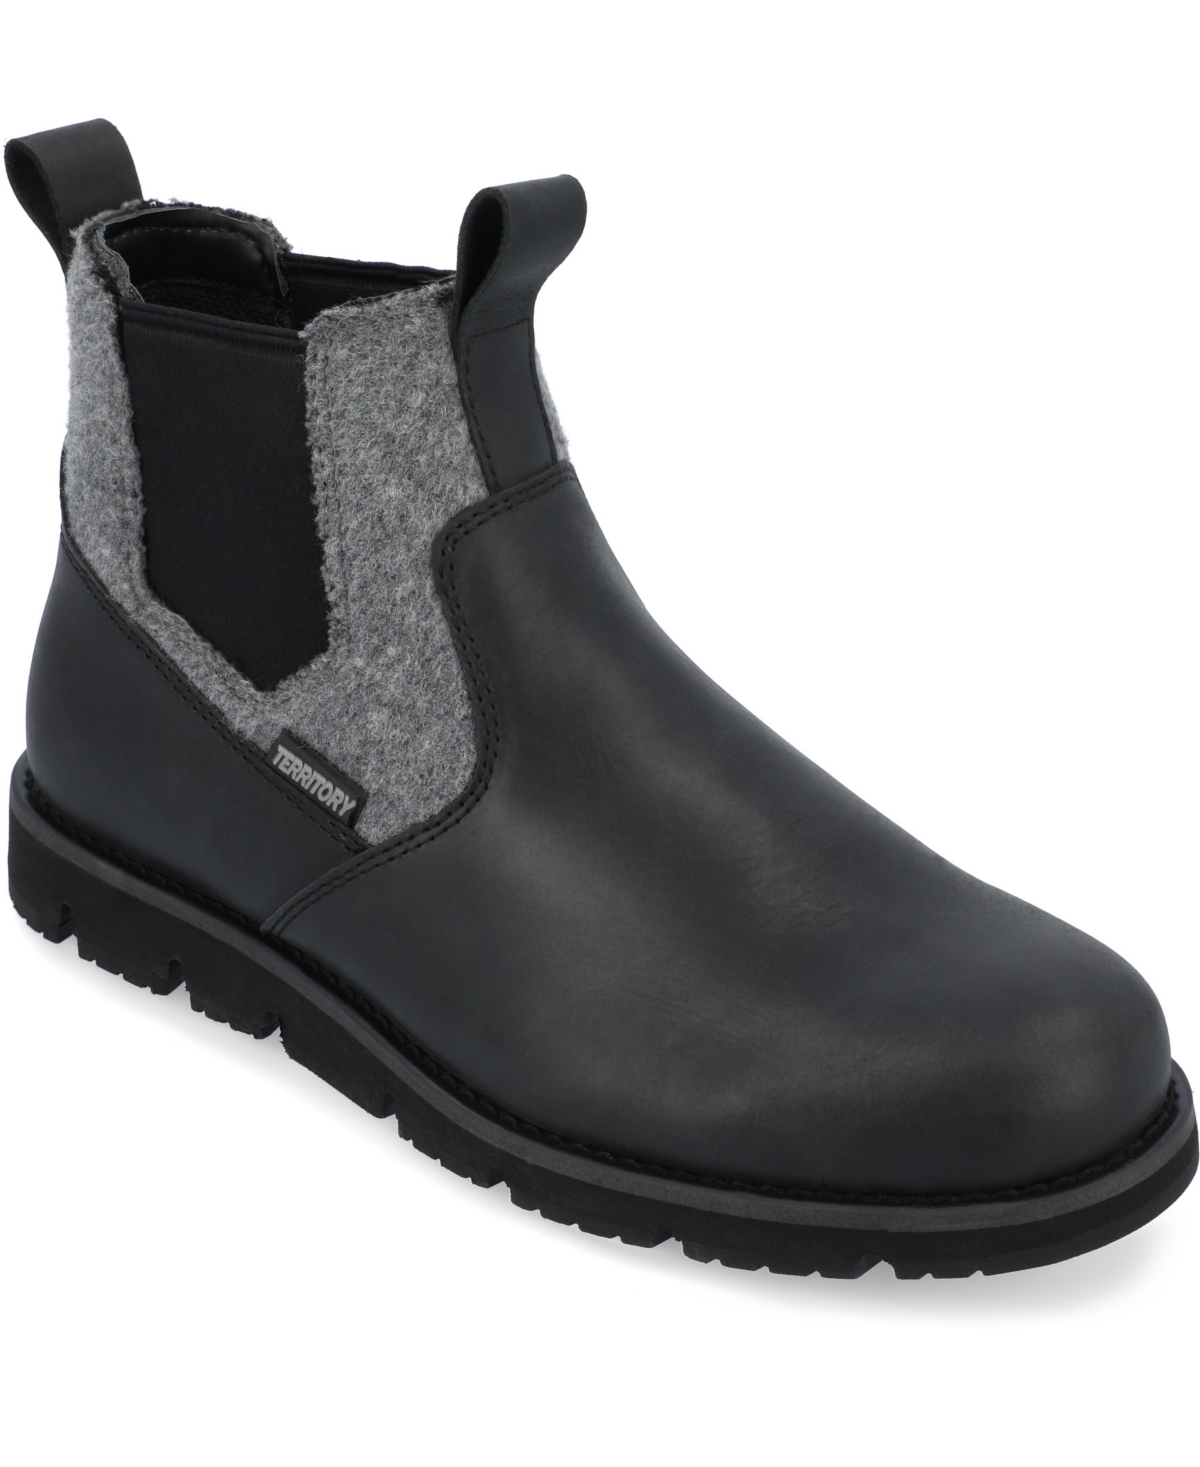 Men's Canyonlands Tru Comfort Foam Pull-On Water Resistant Chelsea Boots - Gray